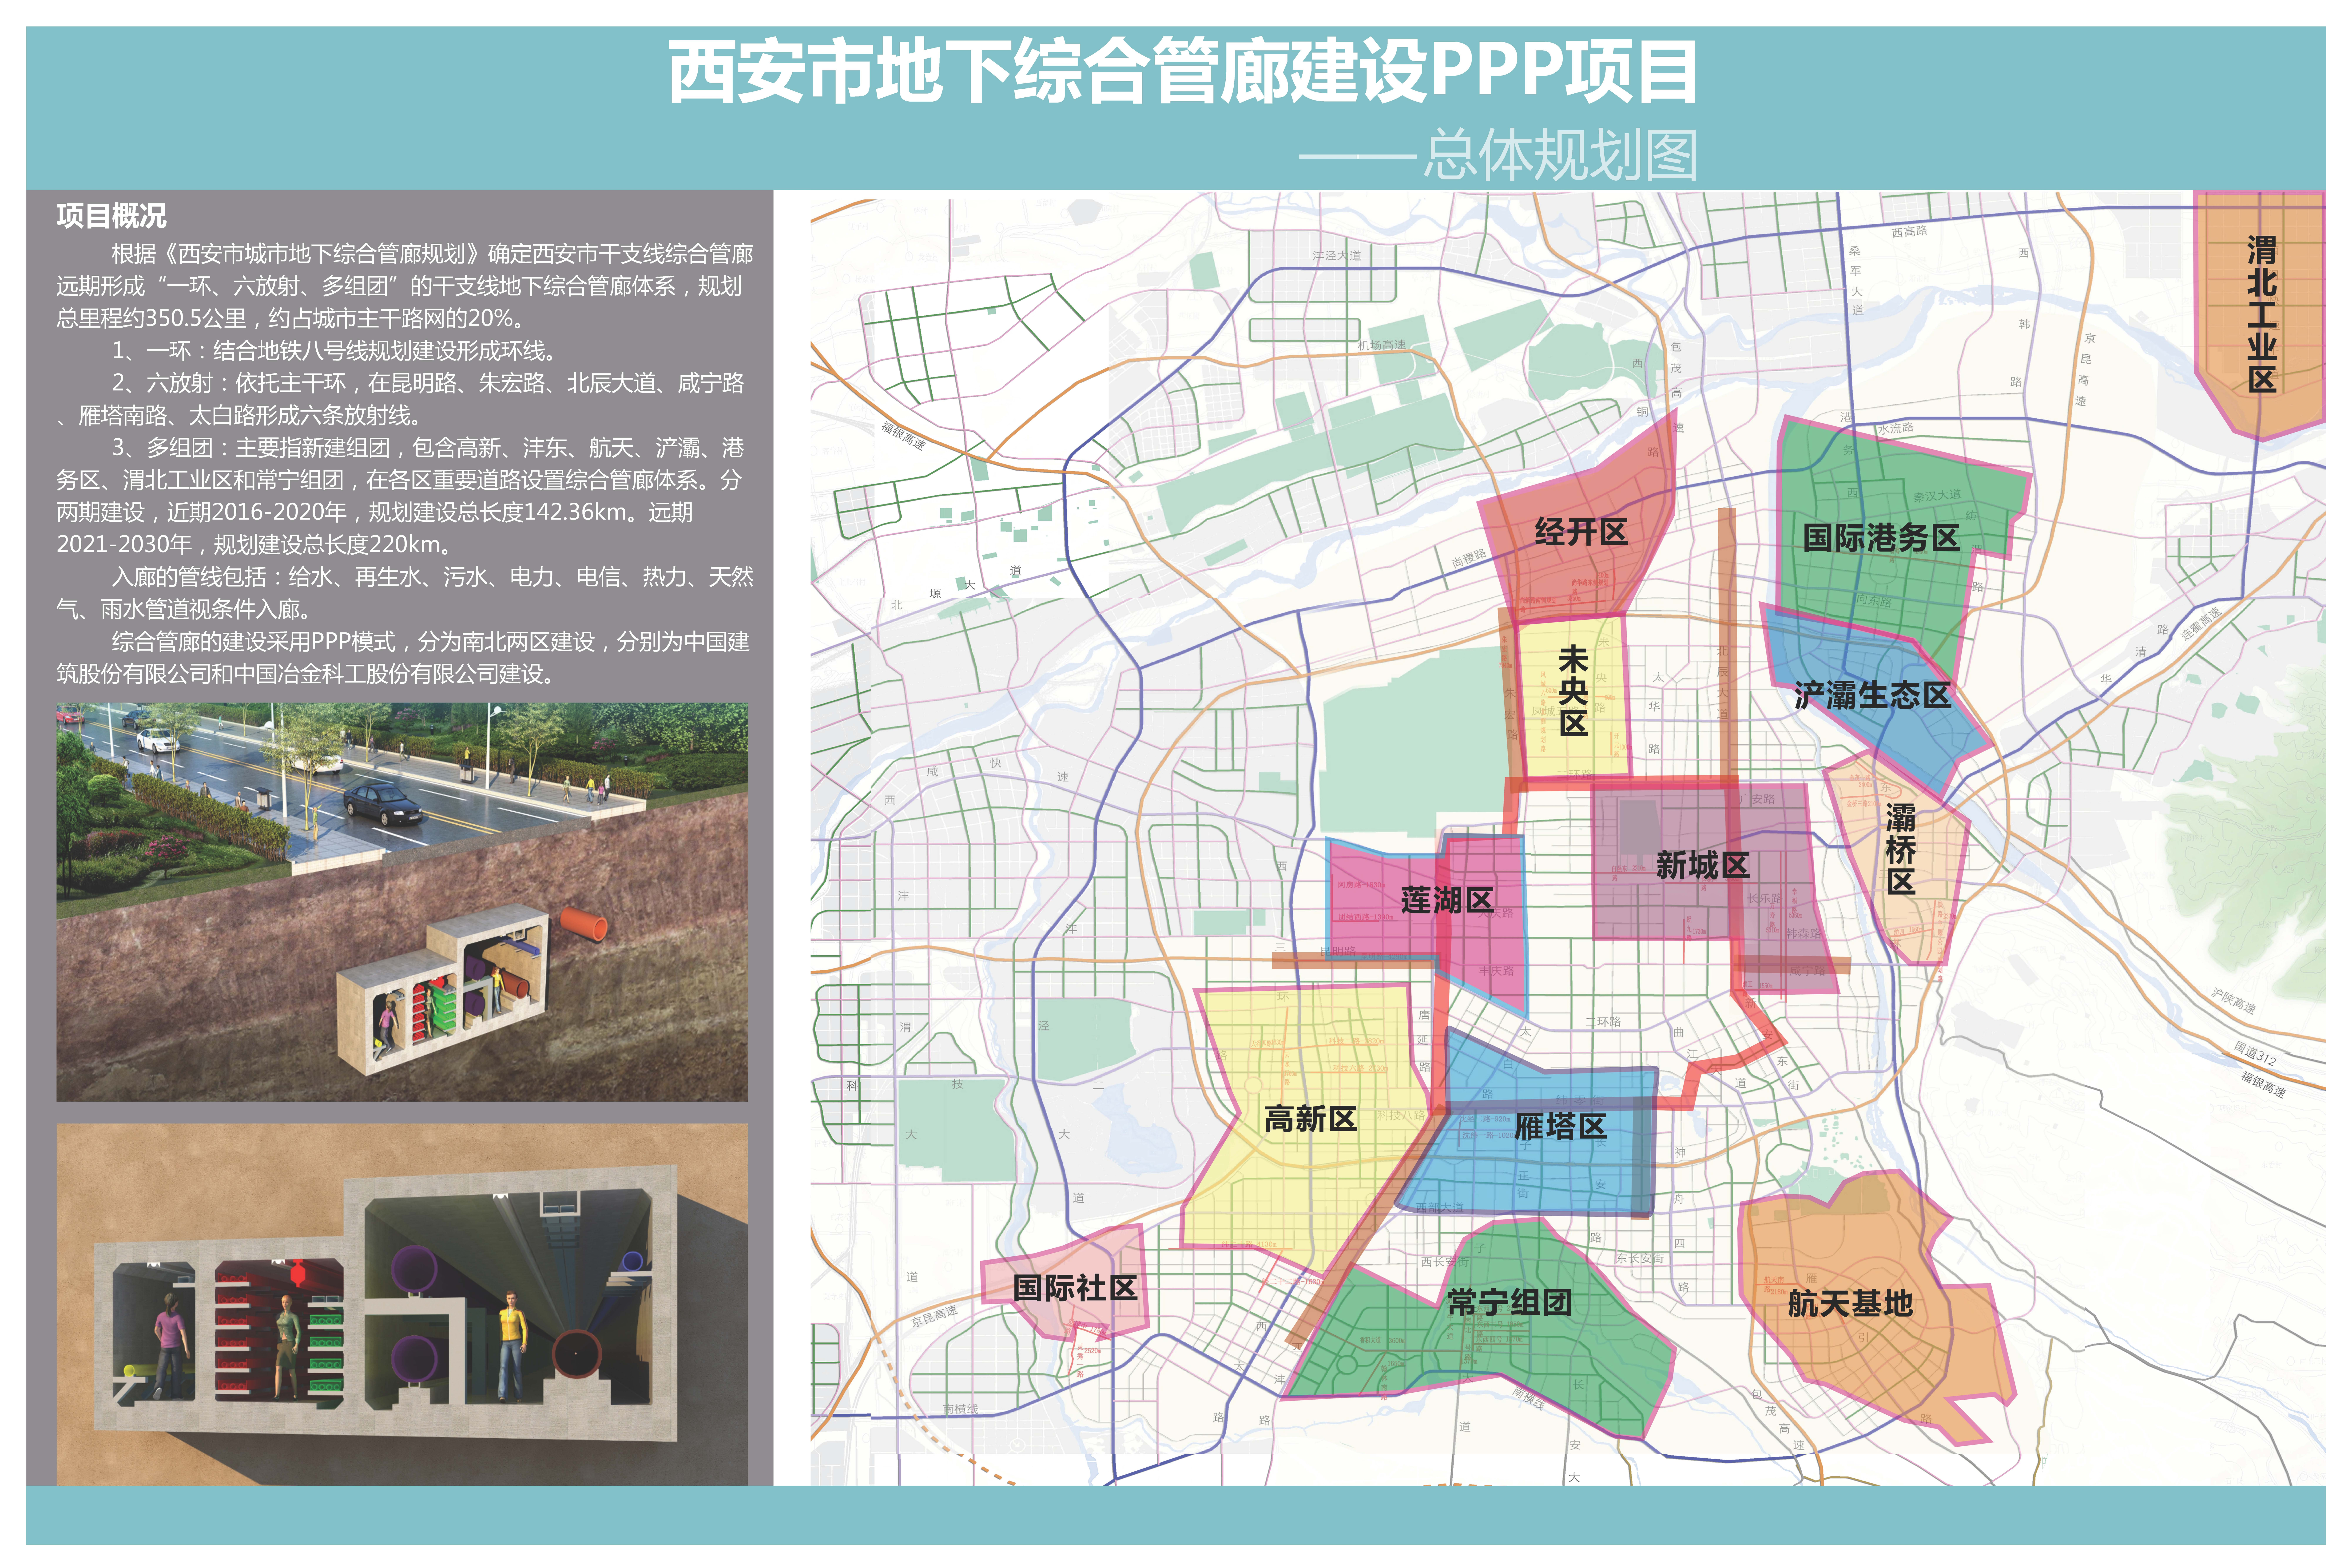 西安市地下綜合管廊PPP項目為國內目前最大的城市綜合管廊PPP項目.jpg